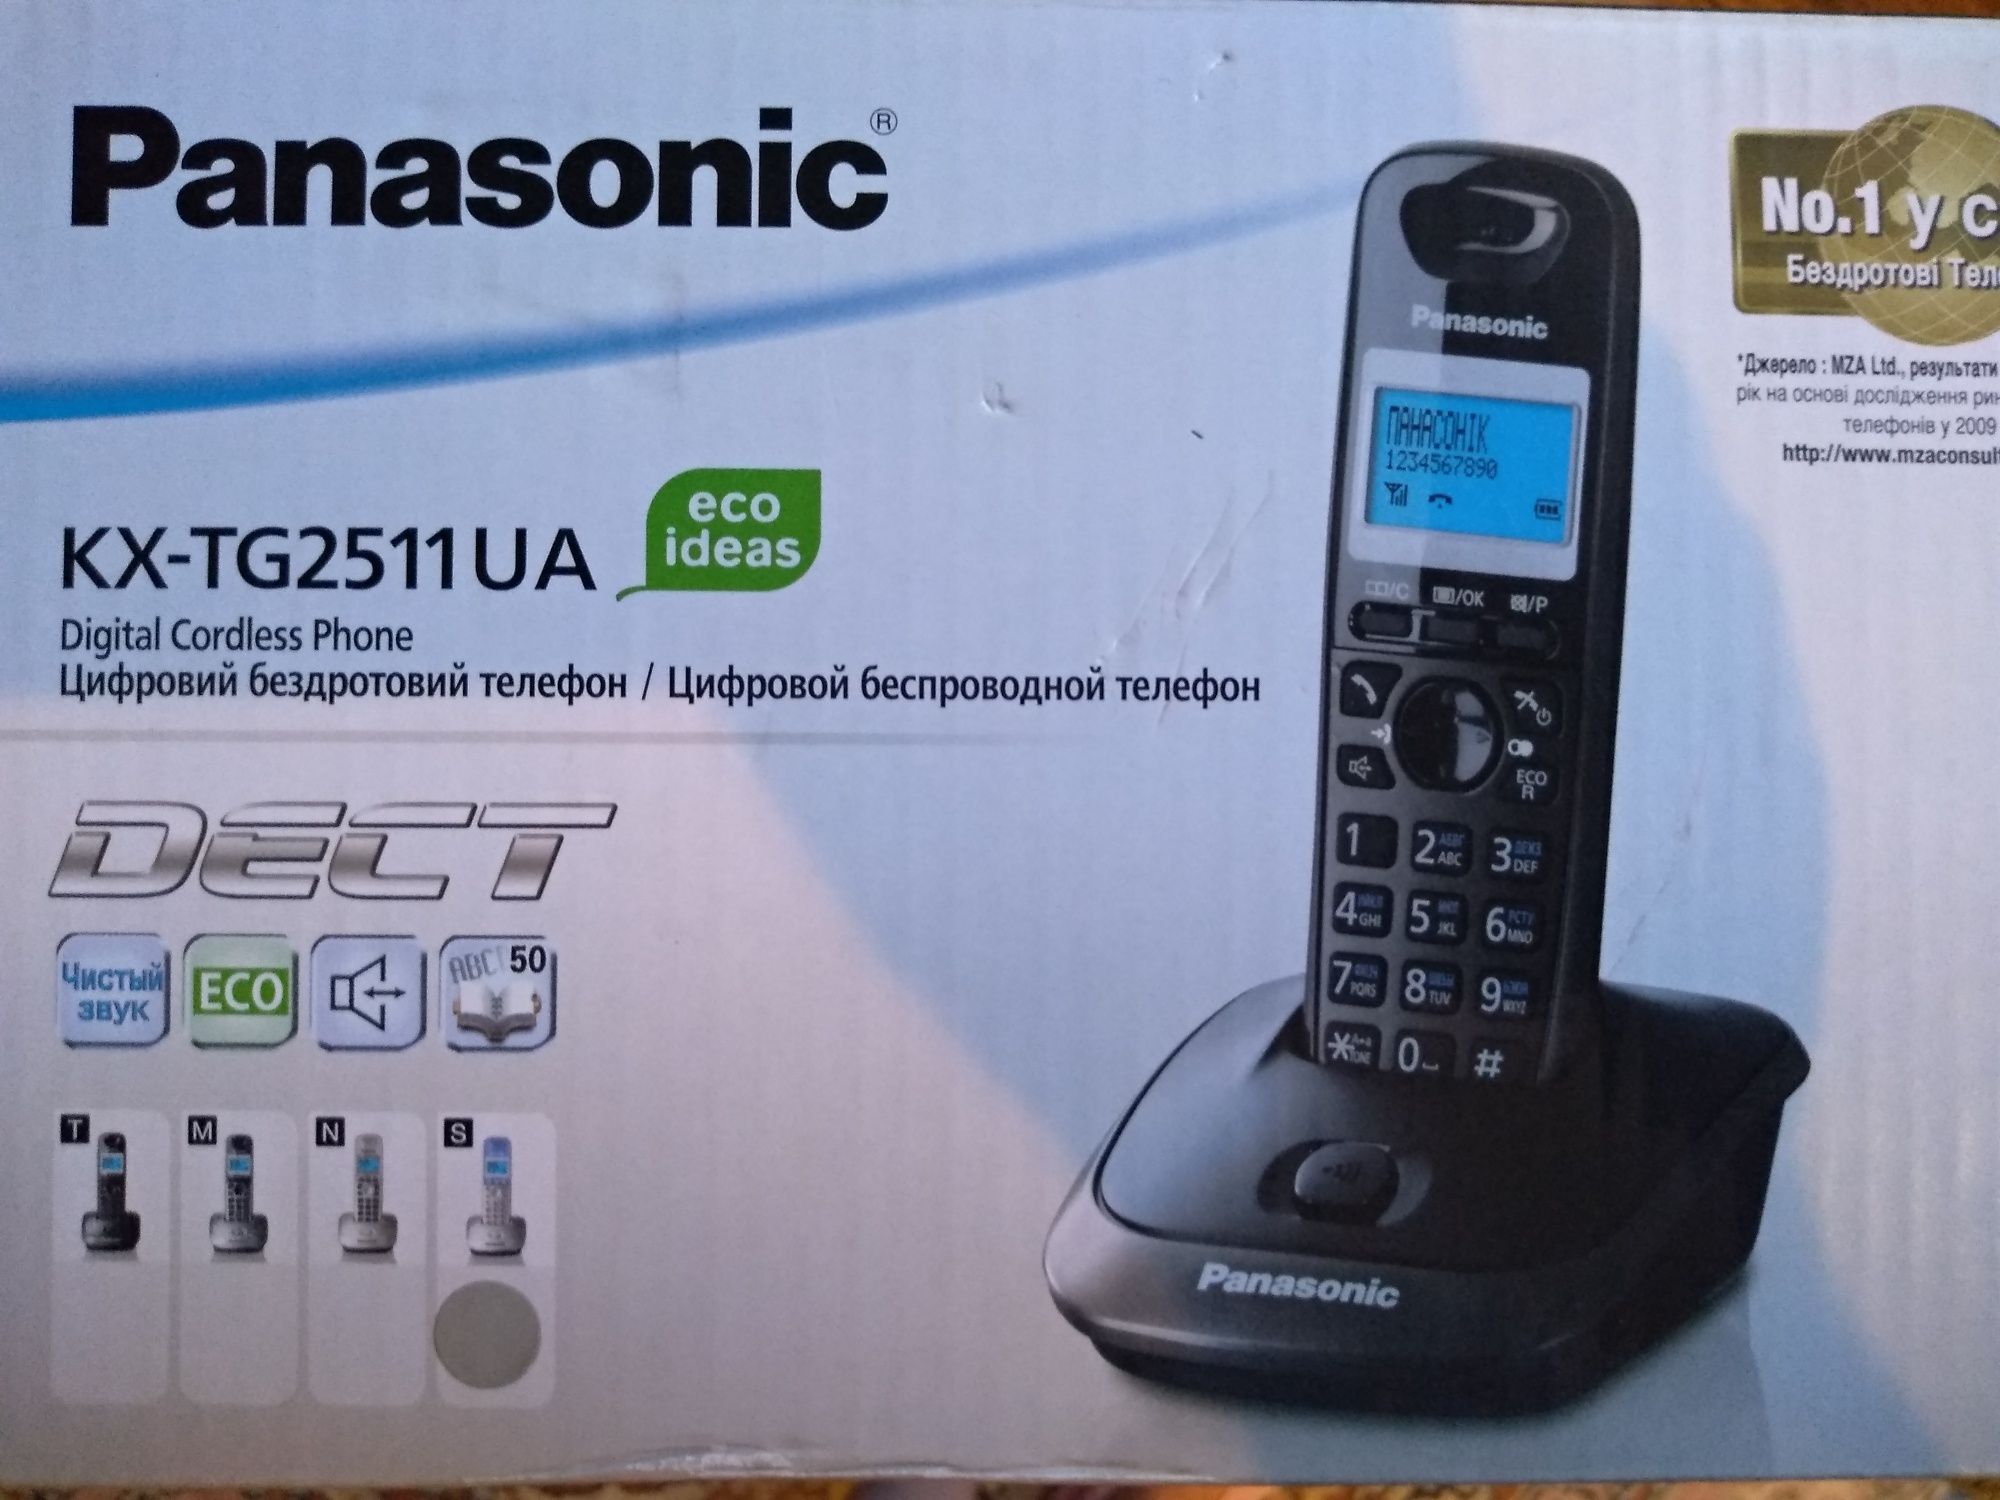 Panasonic KX-TG2511UAN